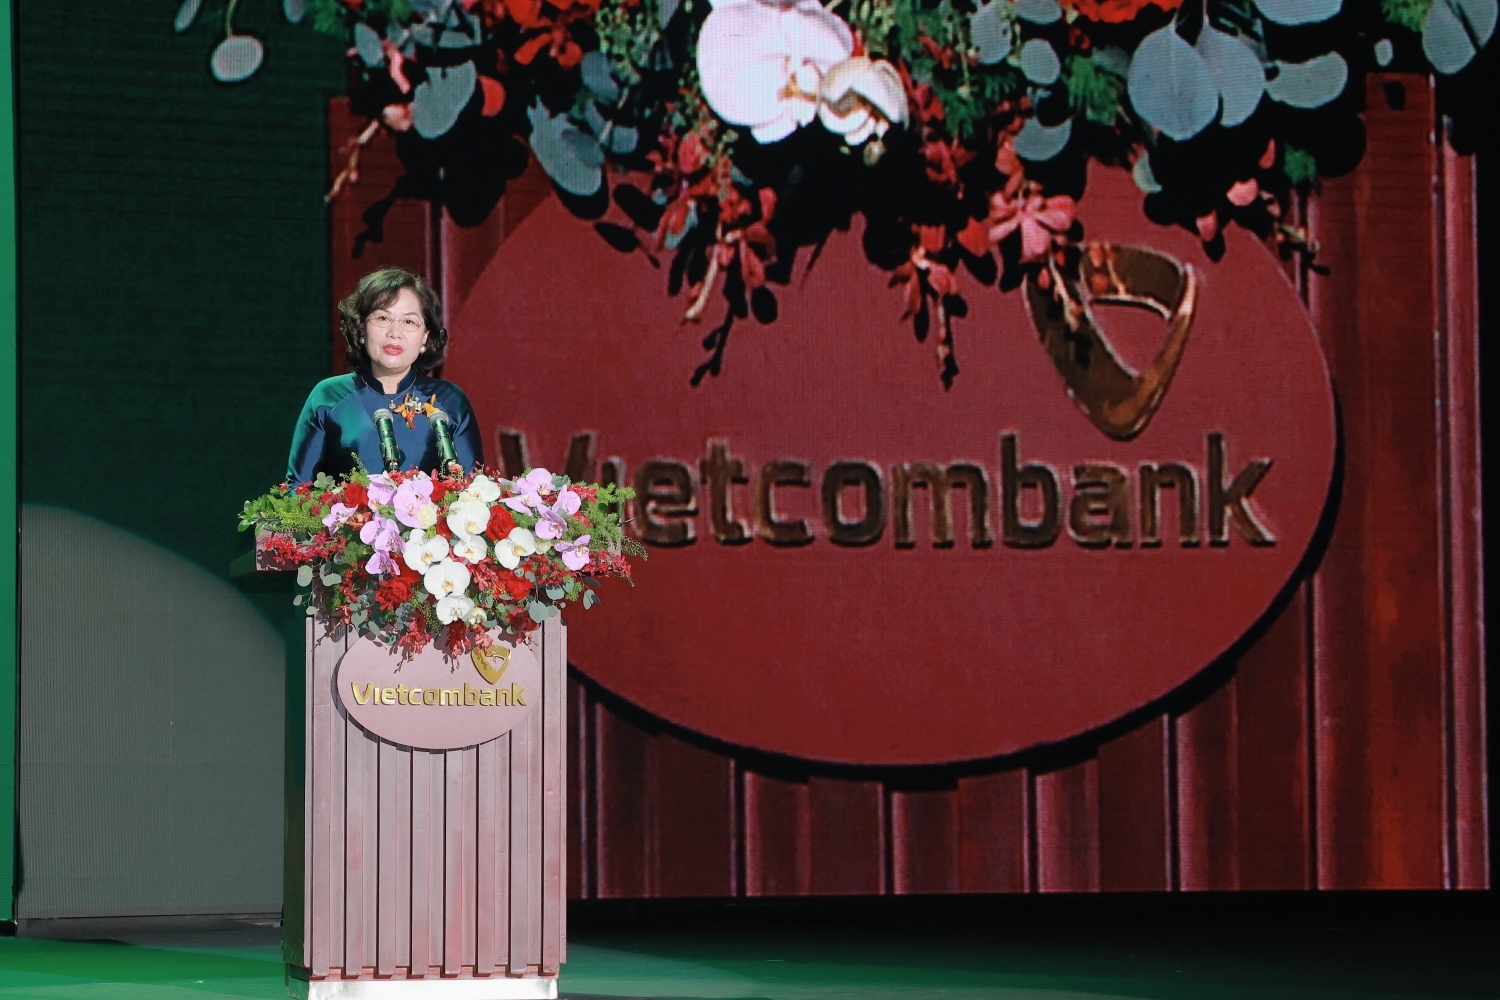 Lễ kỷ niệm 60 năm thành lập Vietcombank và đón nhận danh hiệu Anh hùng Lao động thành công tốt đẹp